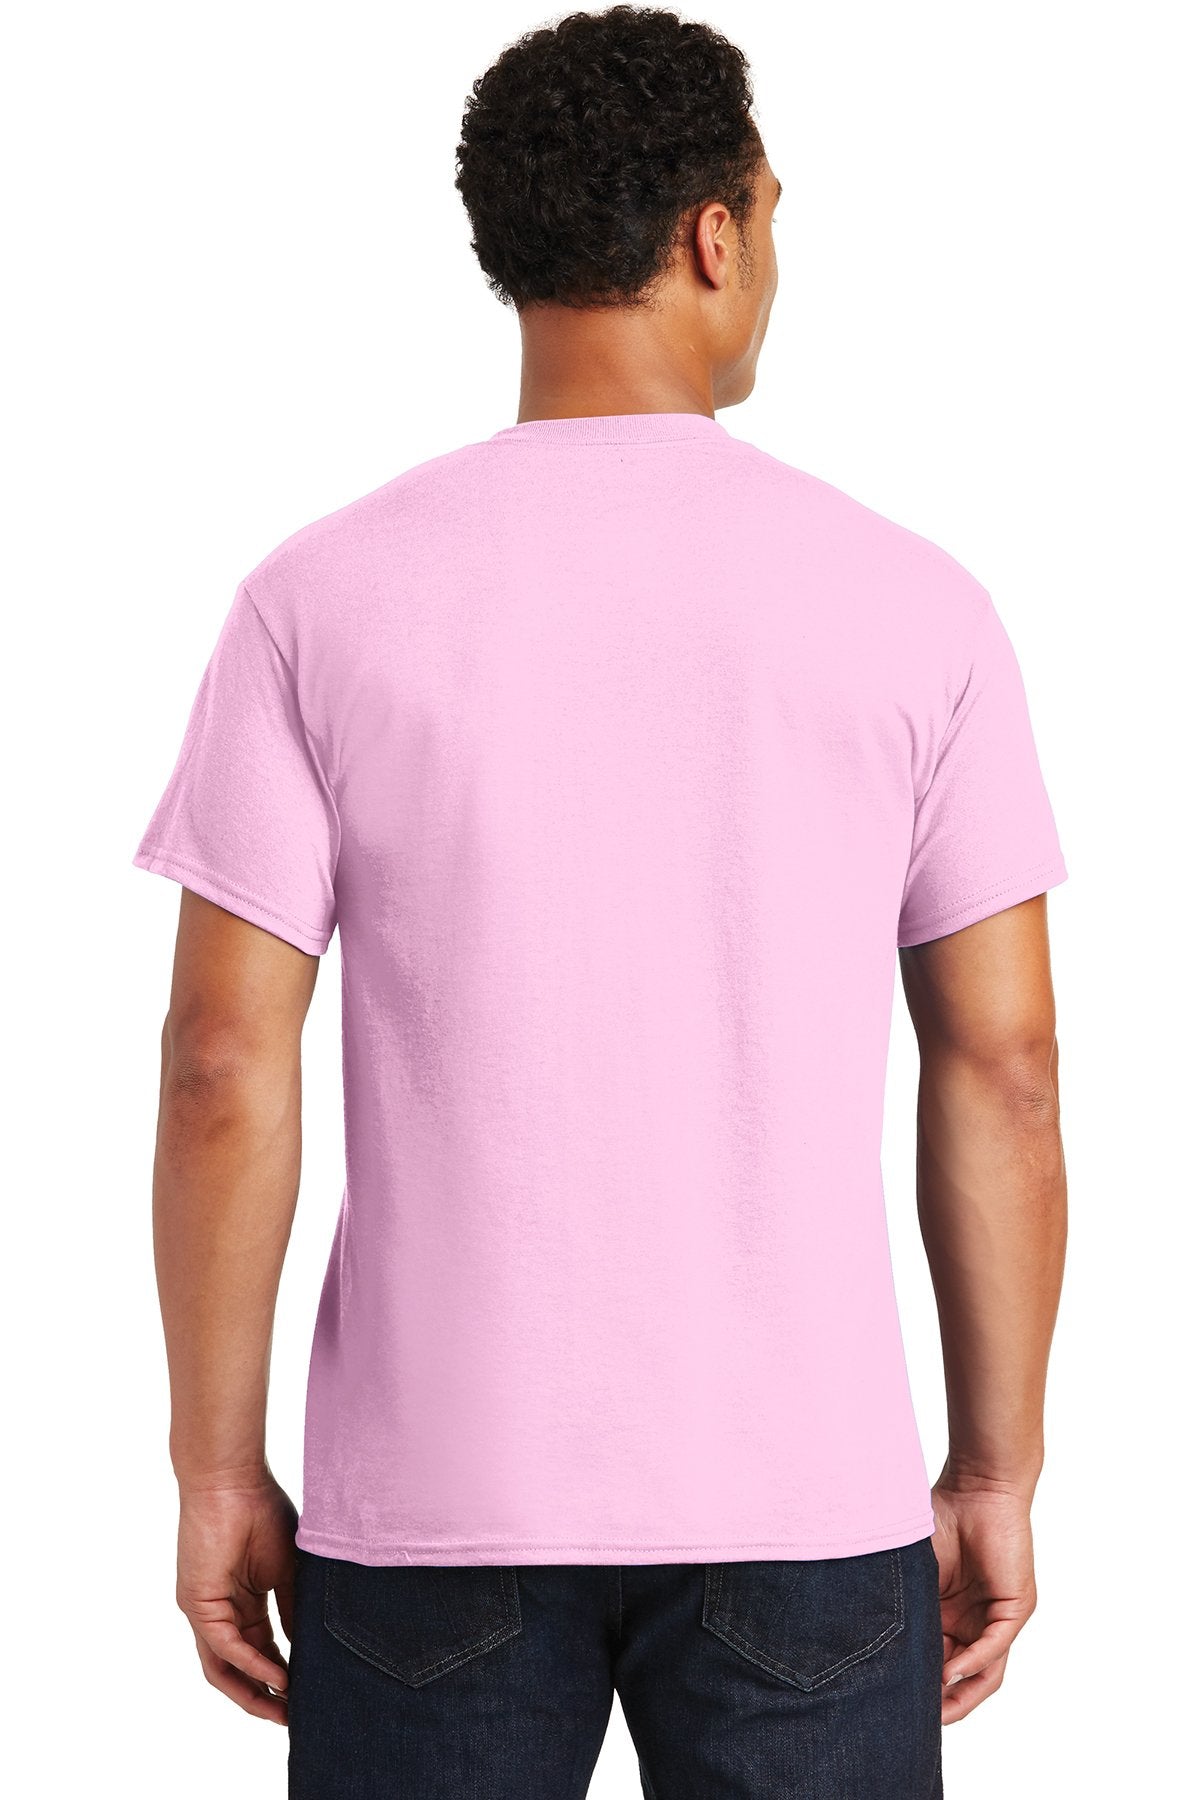 gildan dryblend cotton poly t shirt 8000 light pink